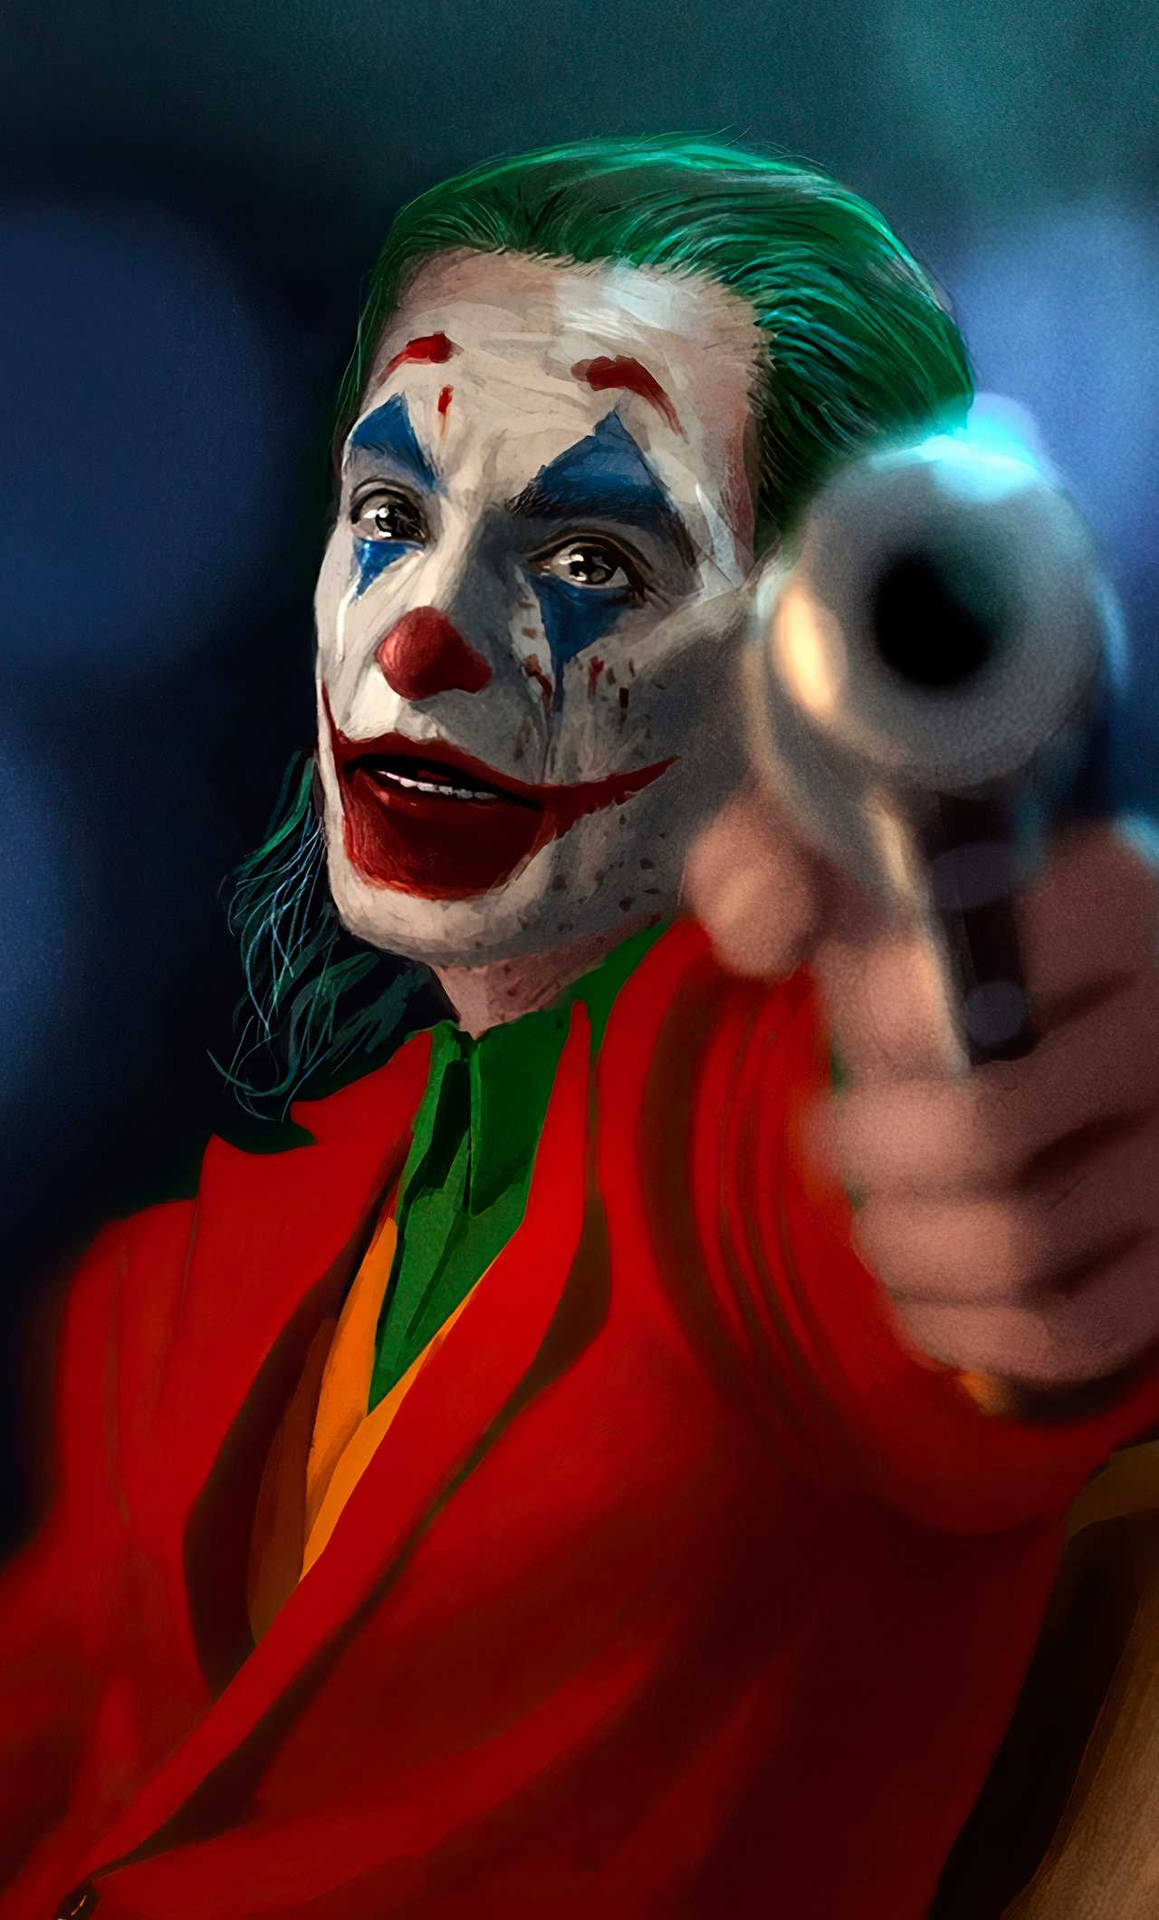 Jokerzeigt Mit Dem Handy Auf Eine Waffe. Wallpaper